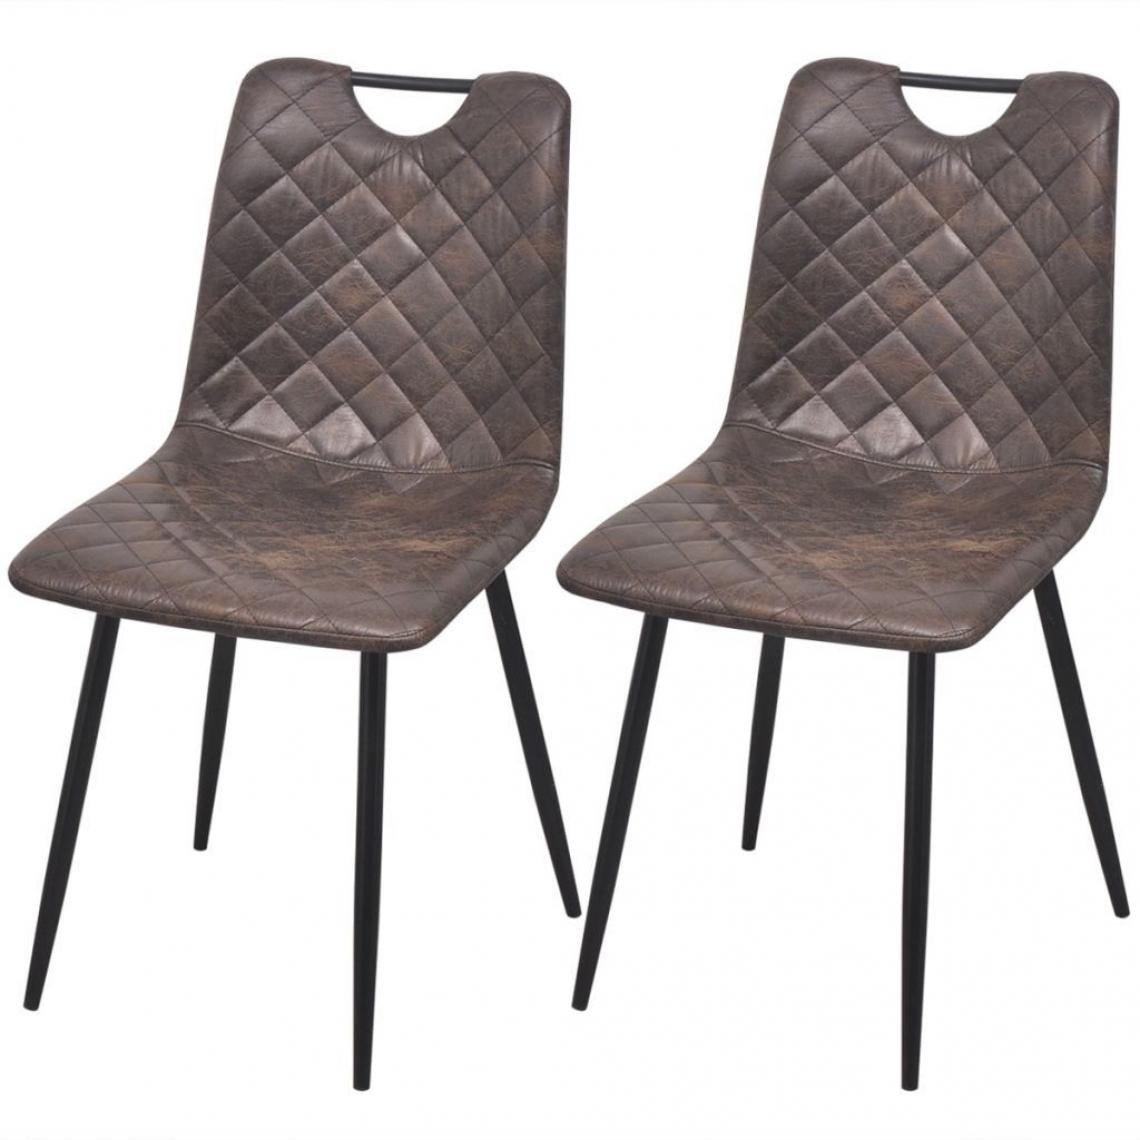 Decoshop26 - Lot de 2 chaises de salle à manger cuisine style rétro en similicuir marron foncé CDS020693 - Chaises